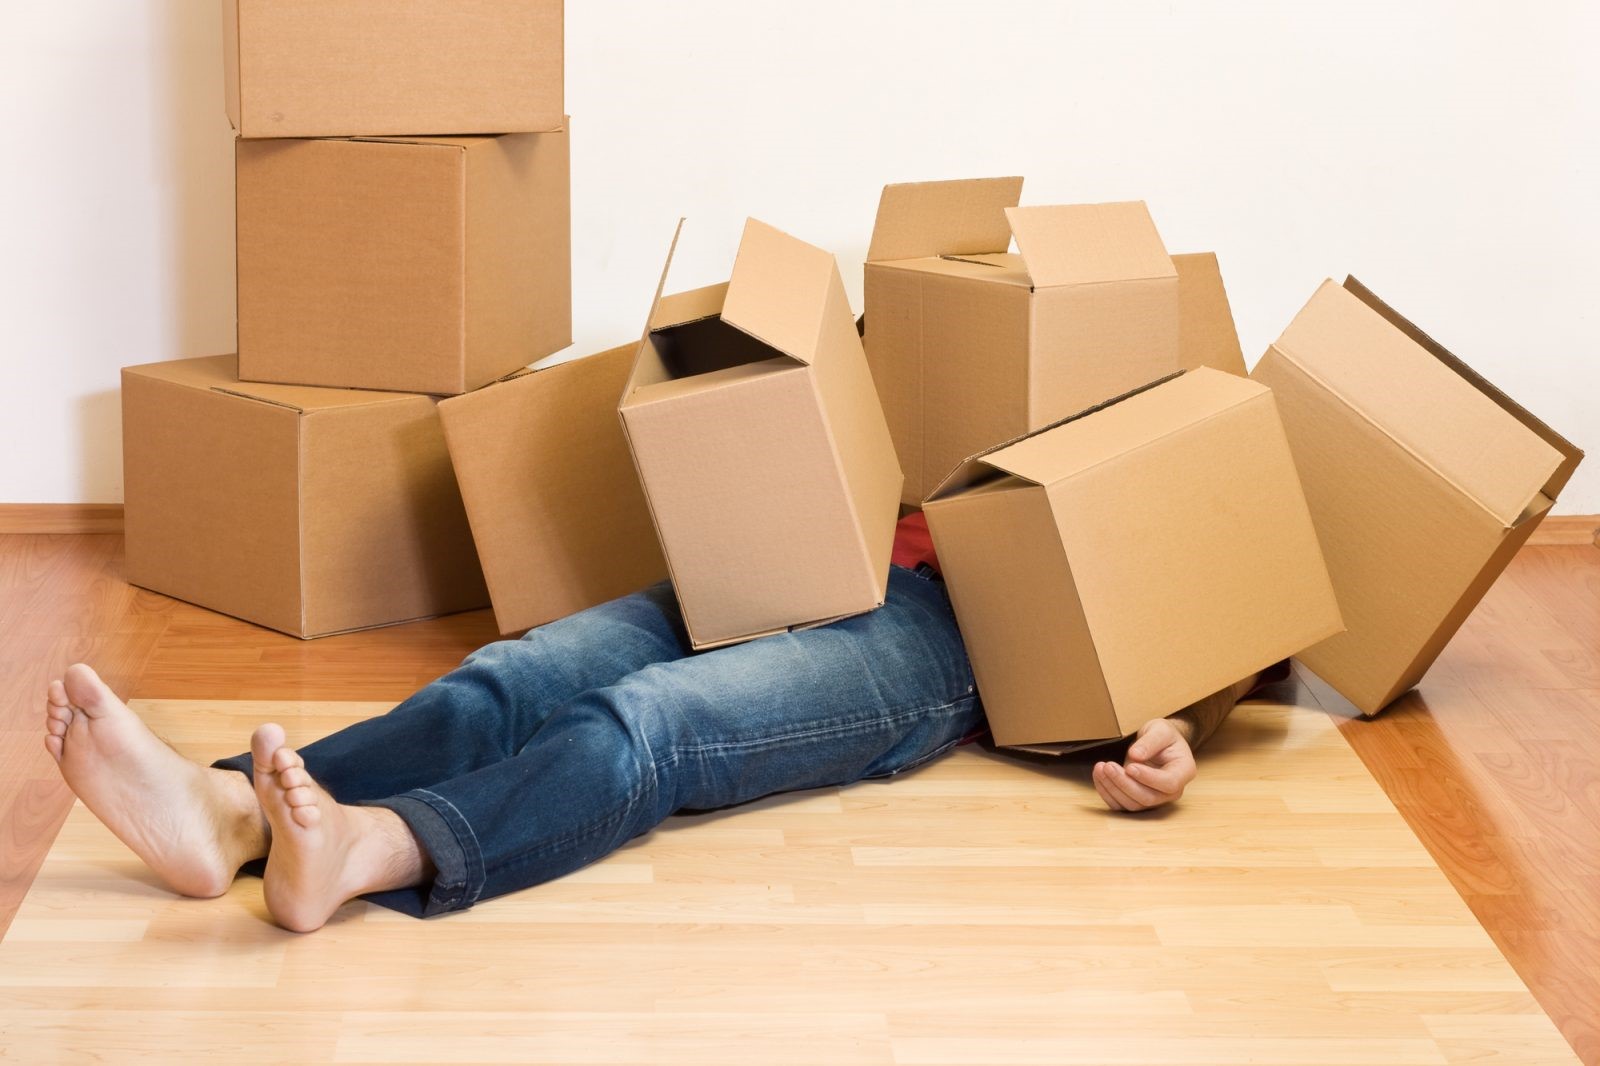 Déplace meuble lourd : les moyens pour transporter vos objets lourds.